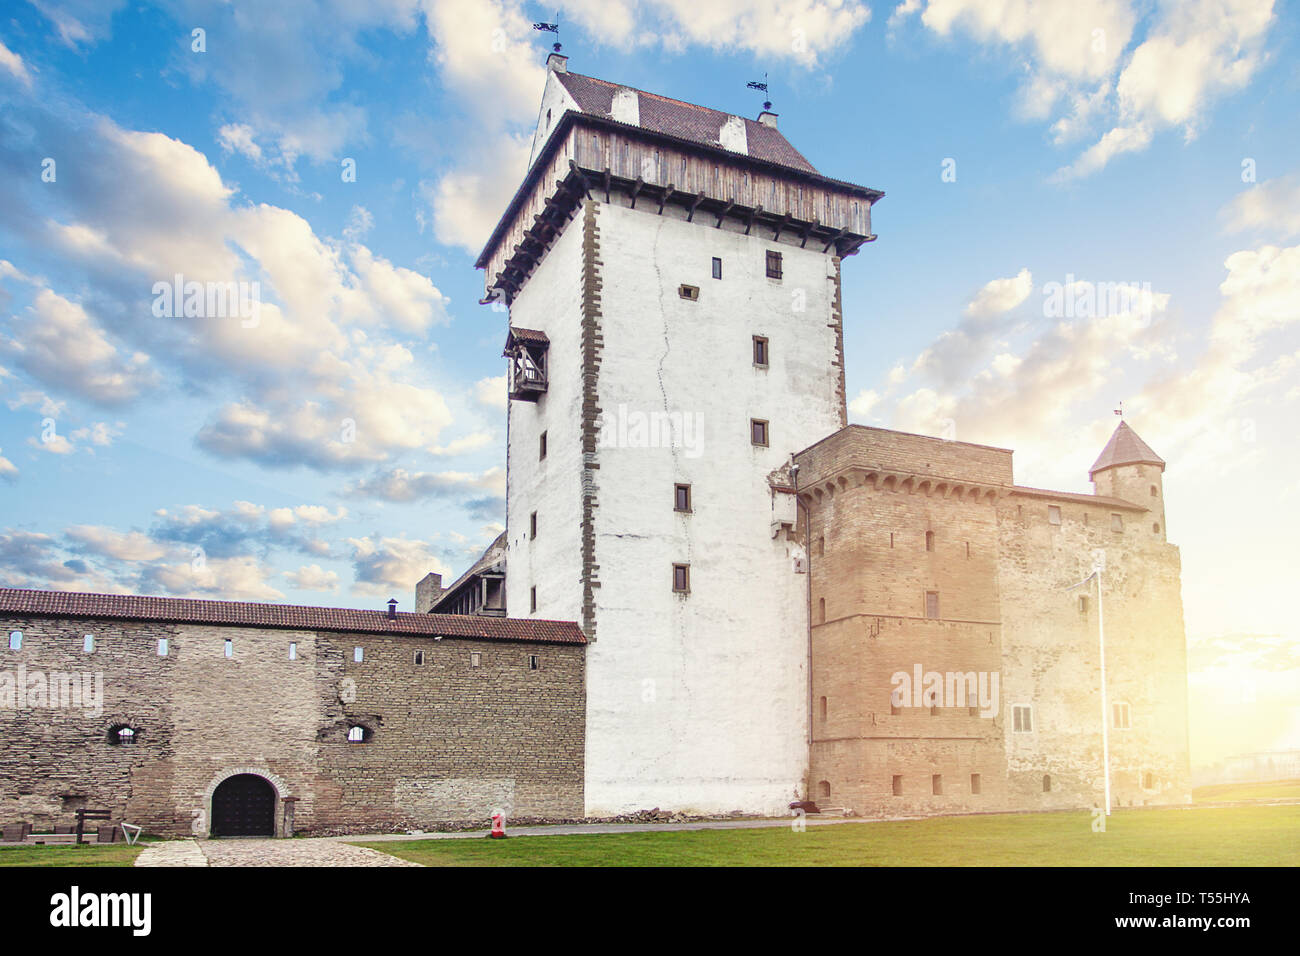 Narva, Estonie. Ancienne forteresse et château, monument dans la région baltique Banque D'Images